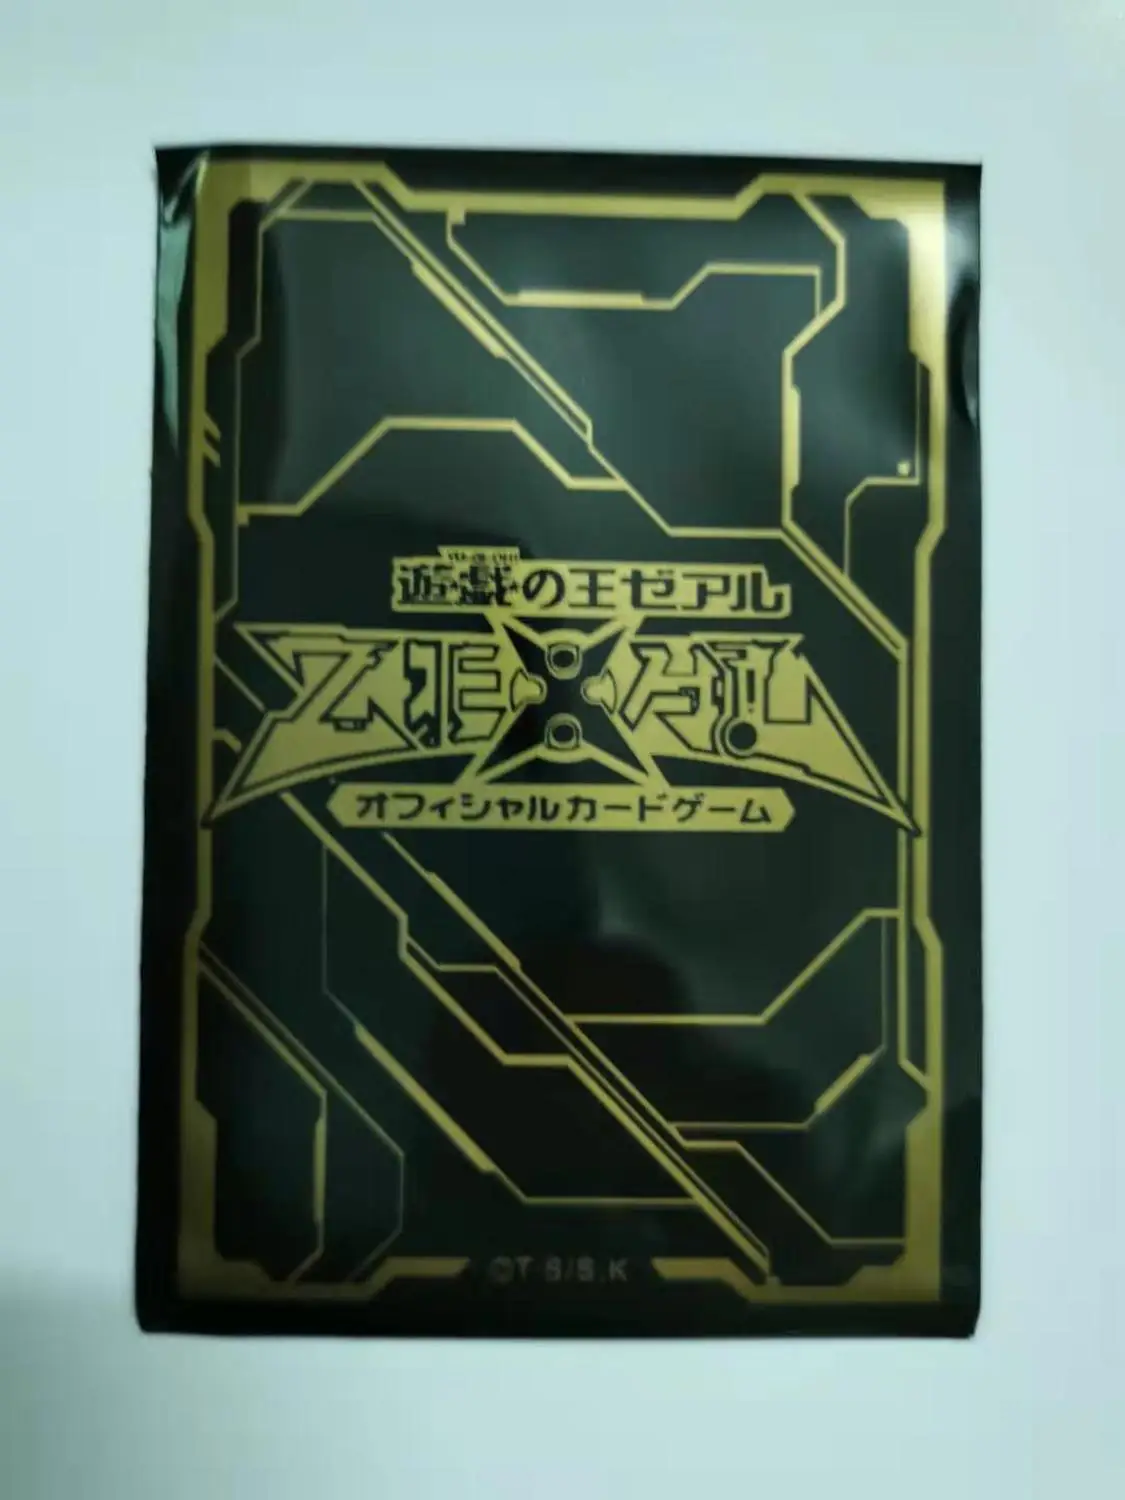 50 шт./компл. Yu-Gi-Oh! KMC Коллекция игр карты рукава карты защитные игрушки ZEXAL/5DS/настольные игры 50 шт. в упаковке - Цвет: 9